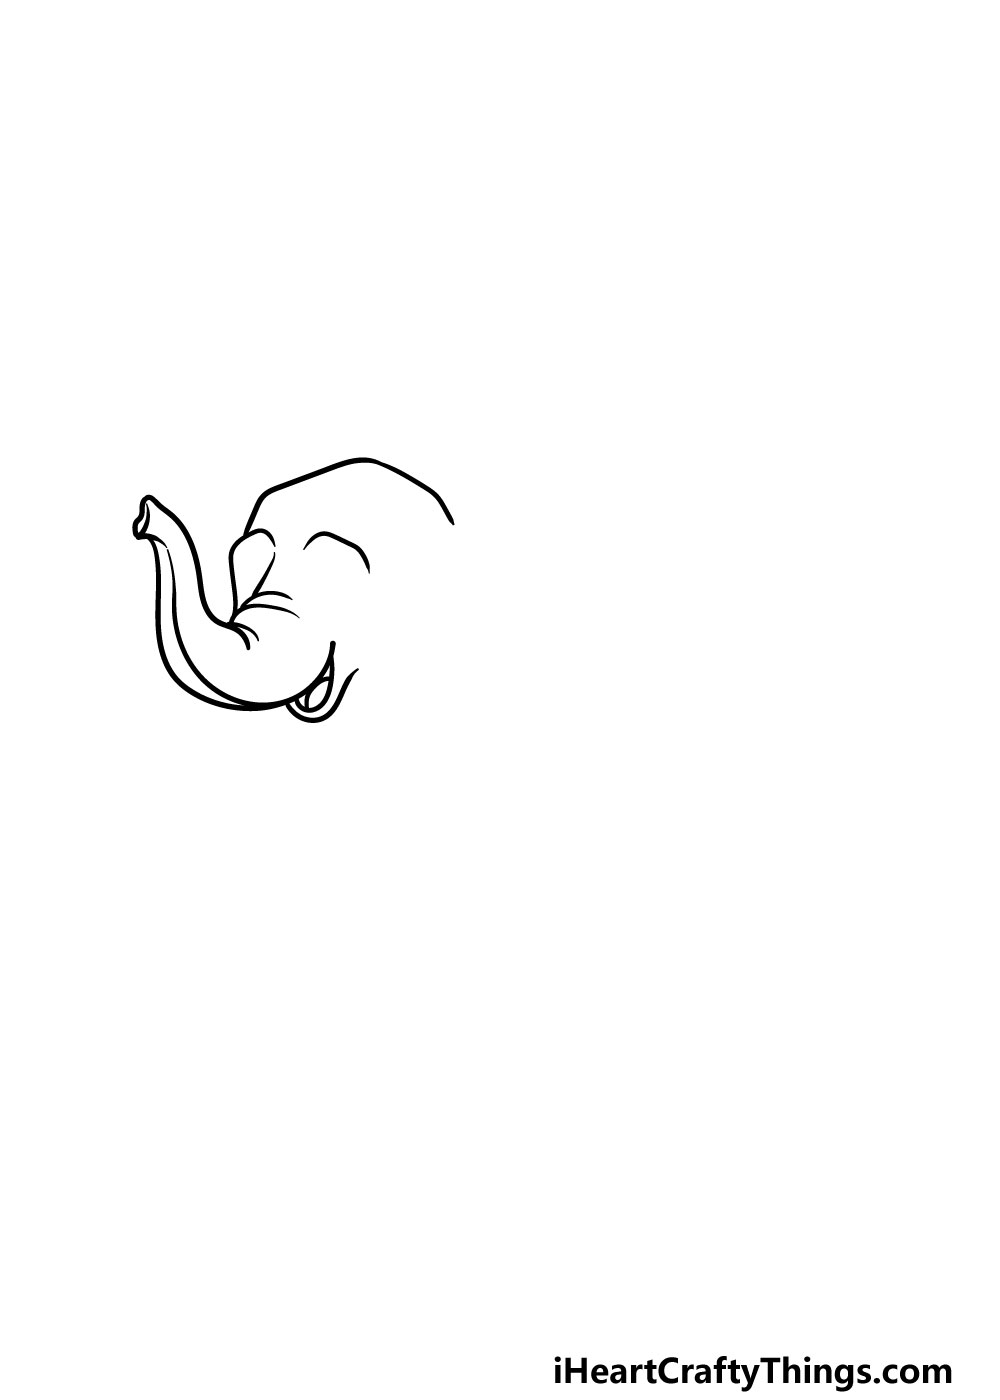 1 101 - Hướng dẫn chi tiết cách vẽ con voi đơn giản với 6 bước cơ bản